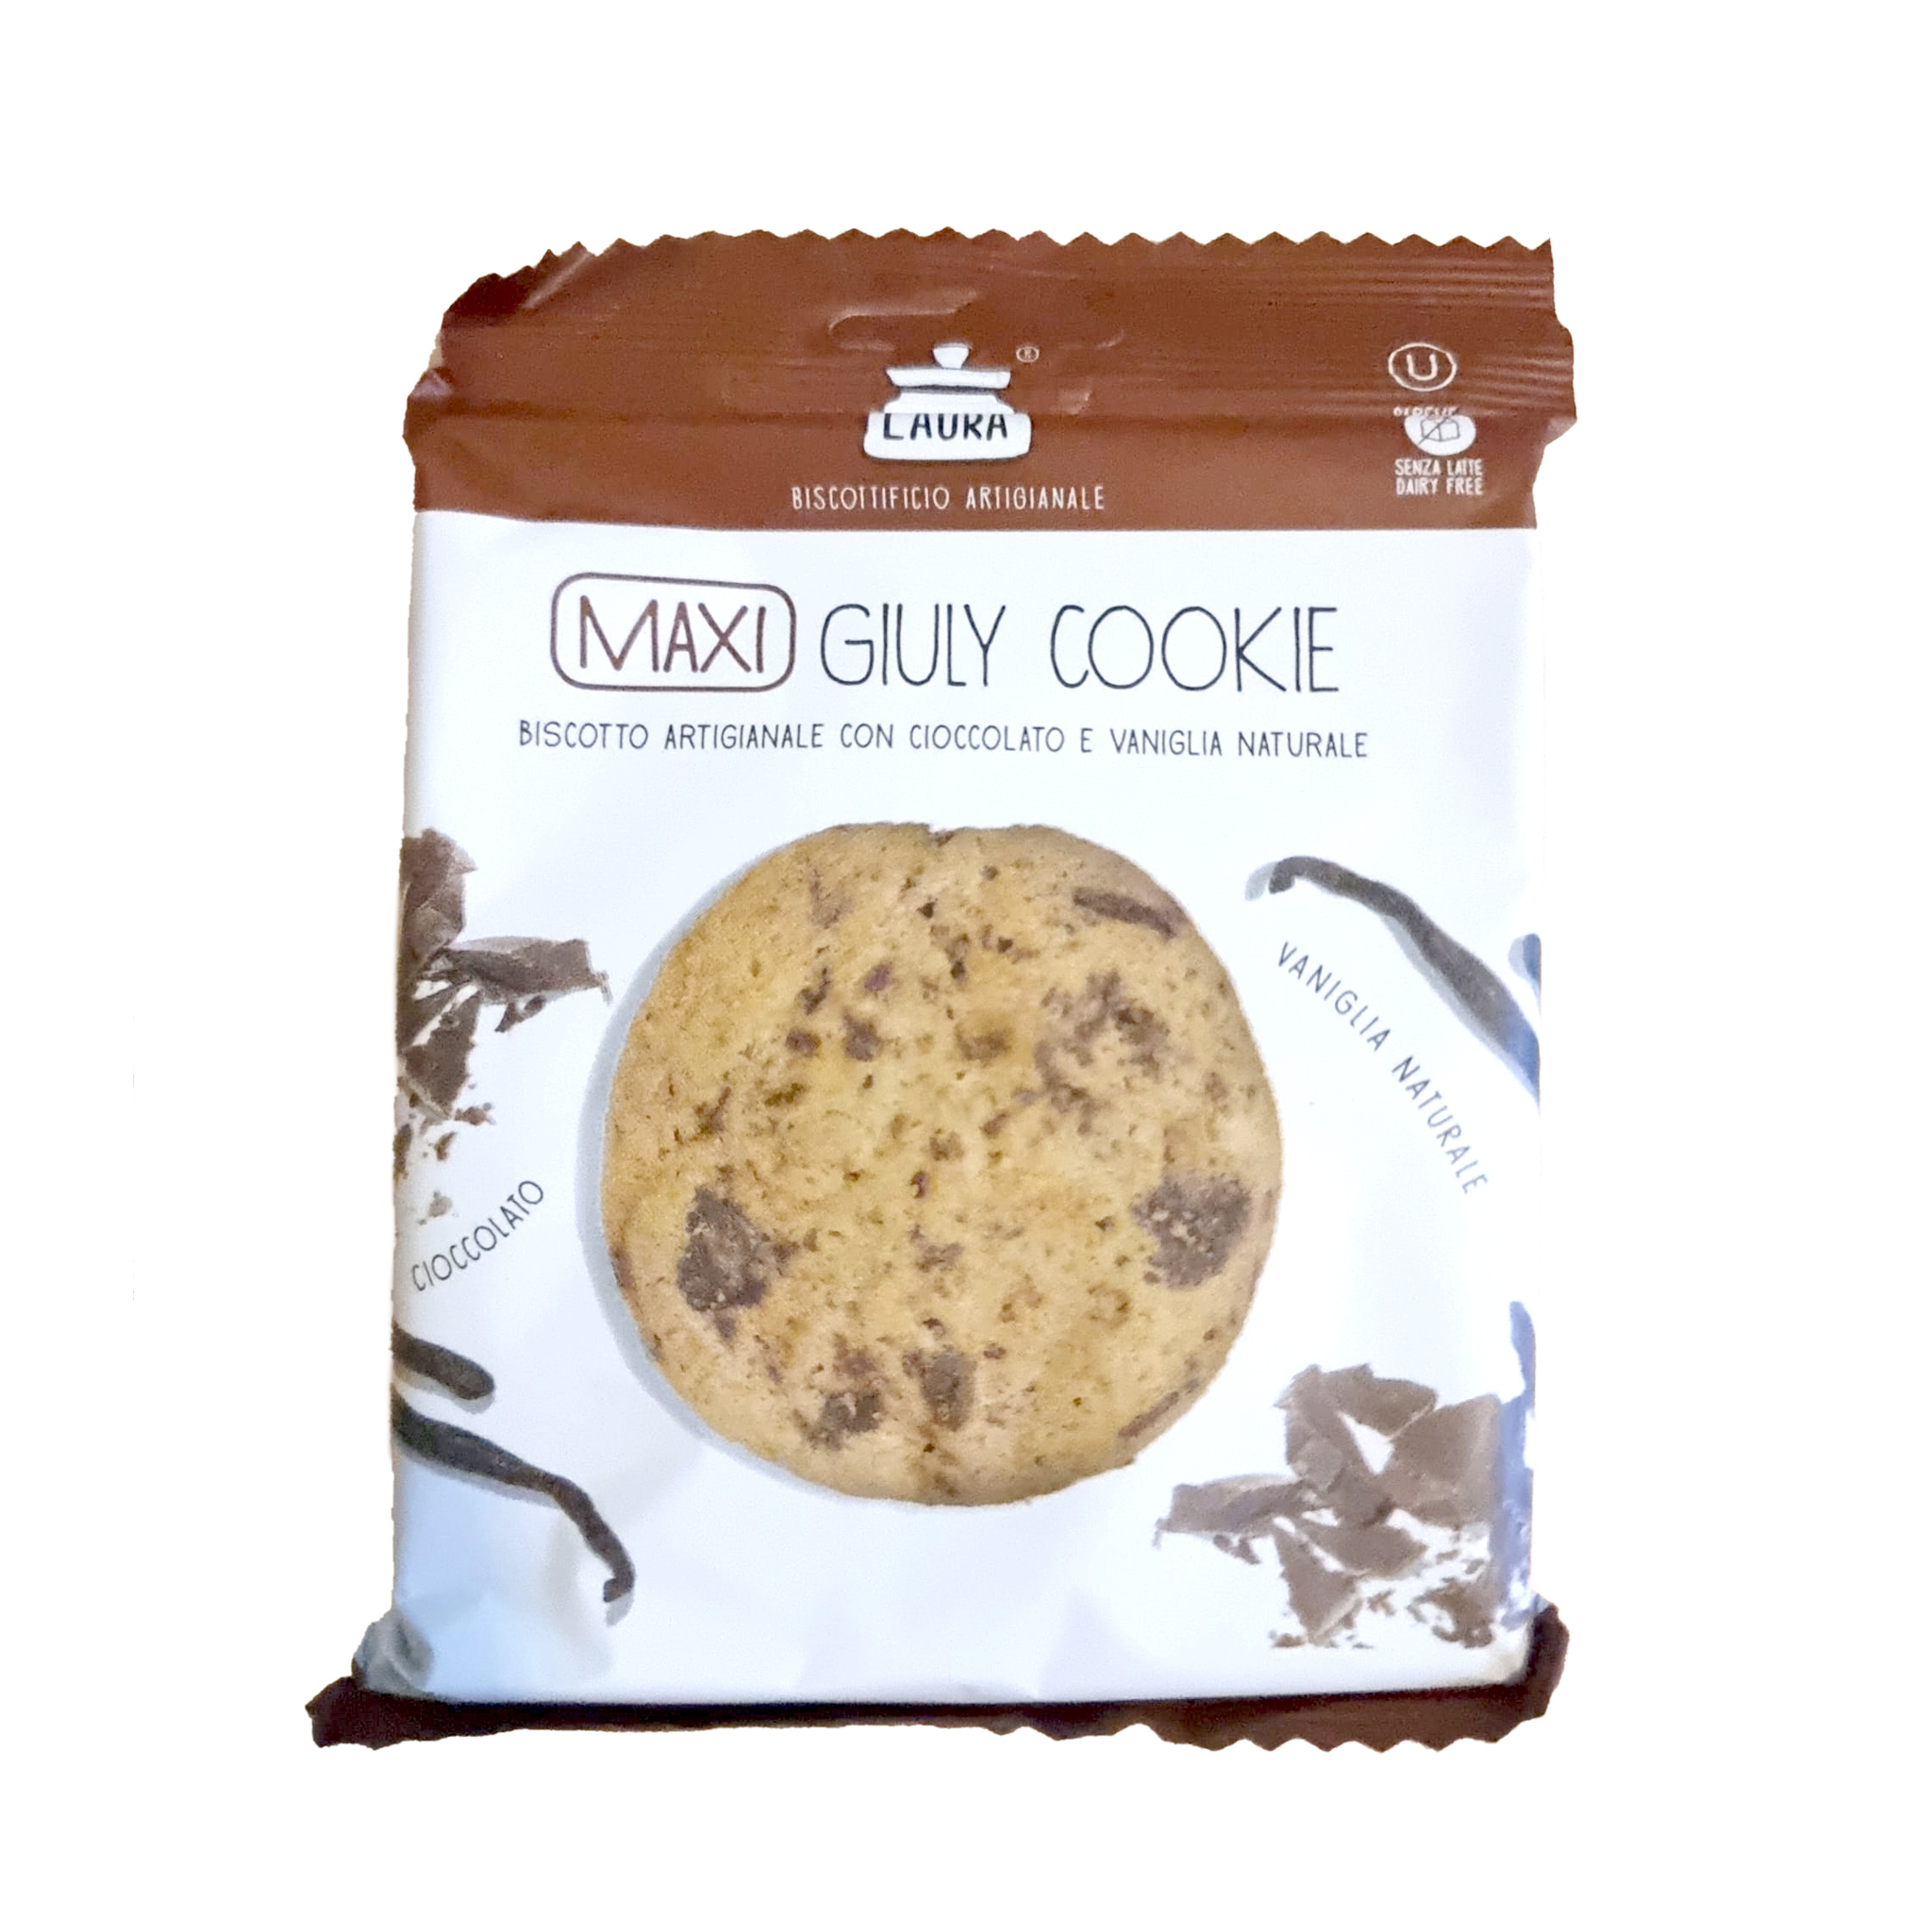 Biscuiti artizanali - Giuly Cookie, 60g | Mondo di Laura